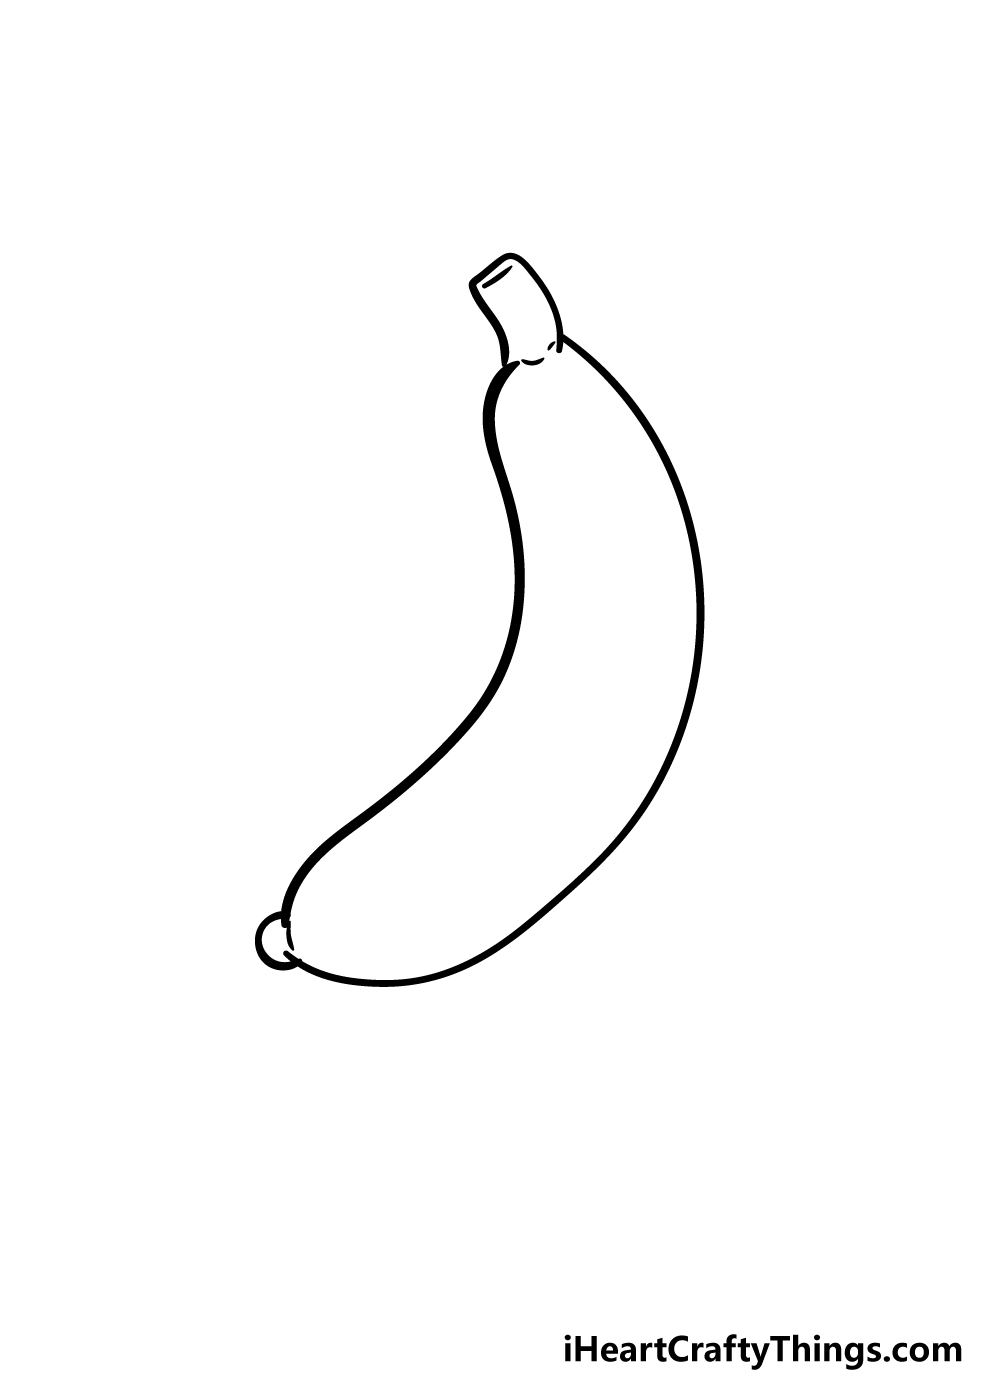 Page 2 | Banana Drawing Images - Free Download on Freepik